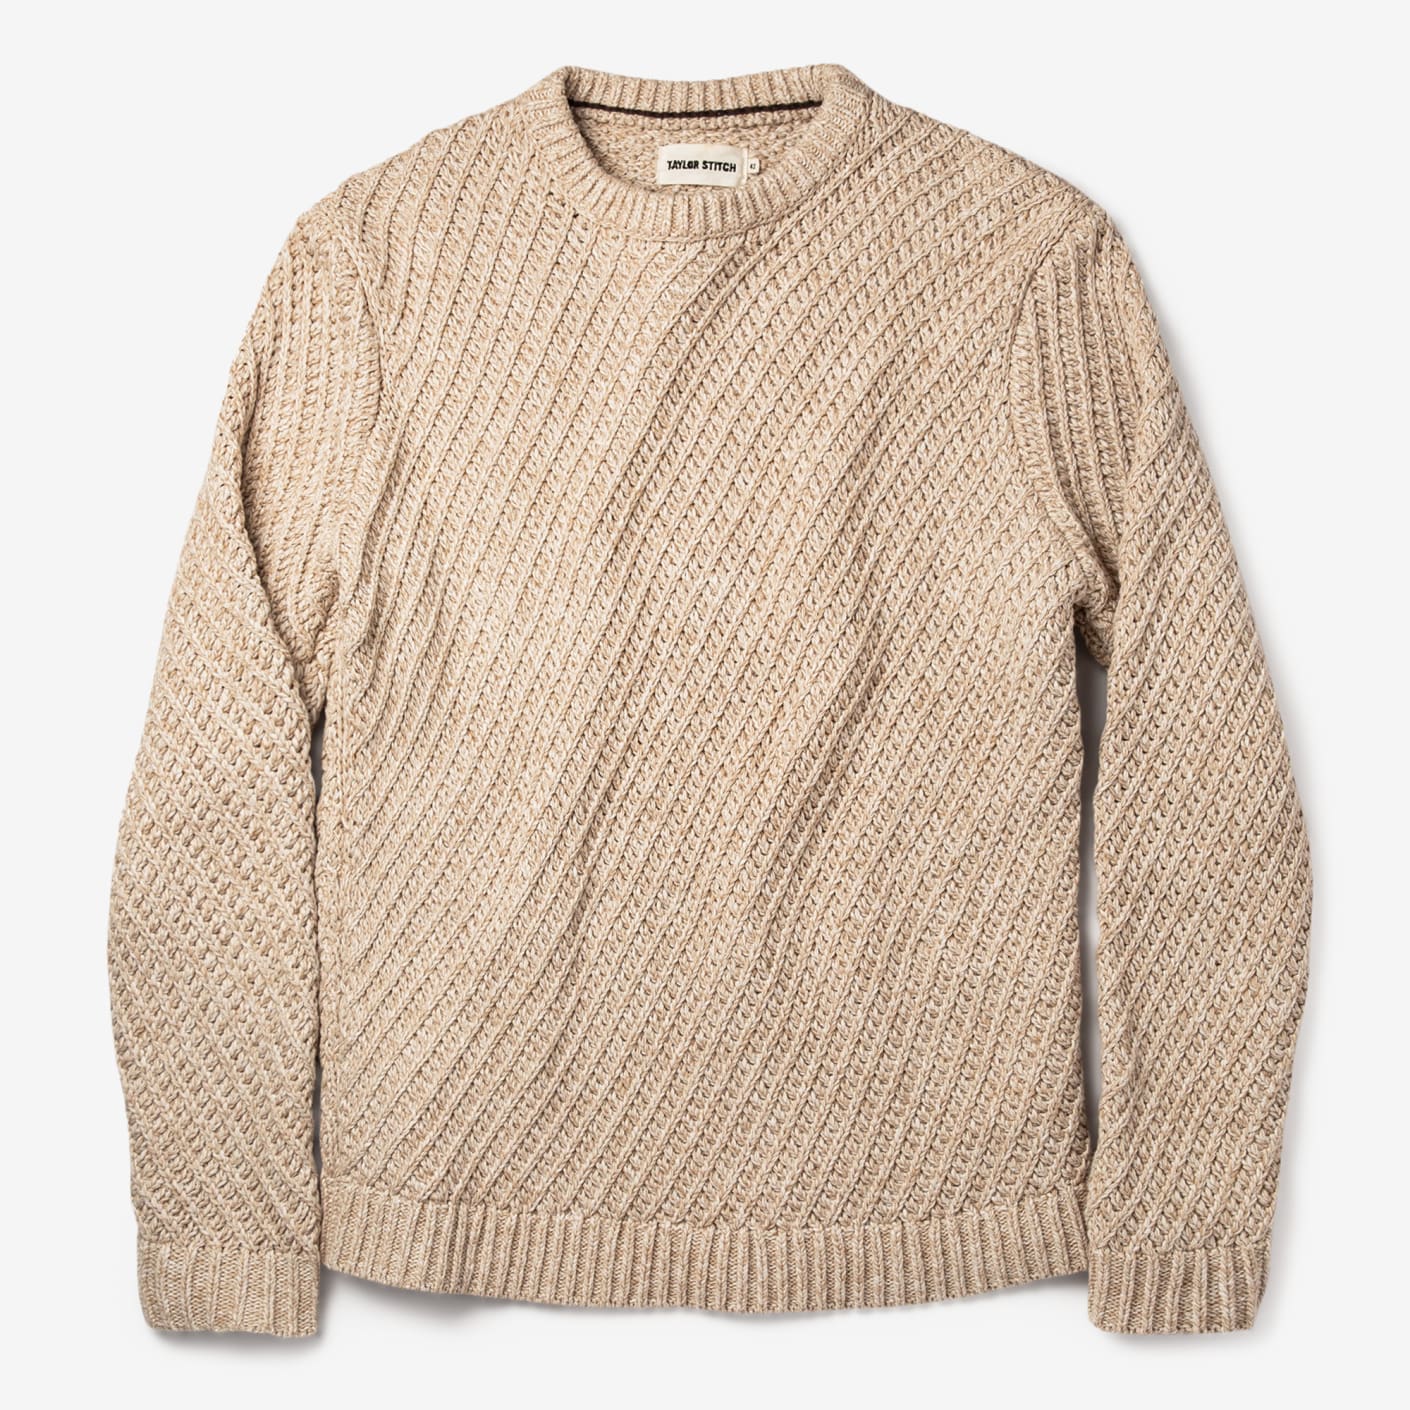 Taylor Stitch The Adirondack Sweater – Natural | Bespoke Post